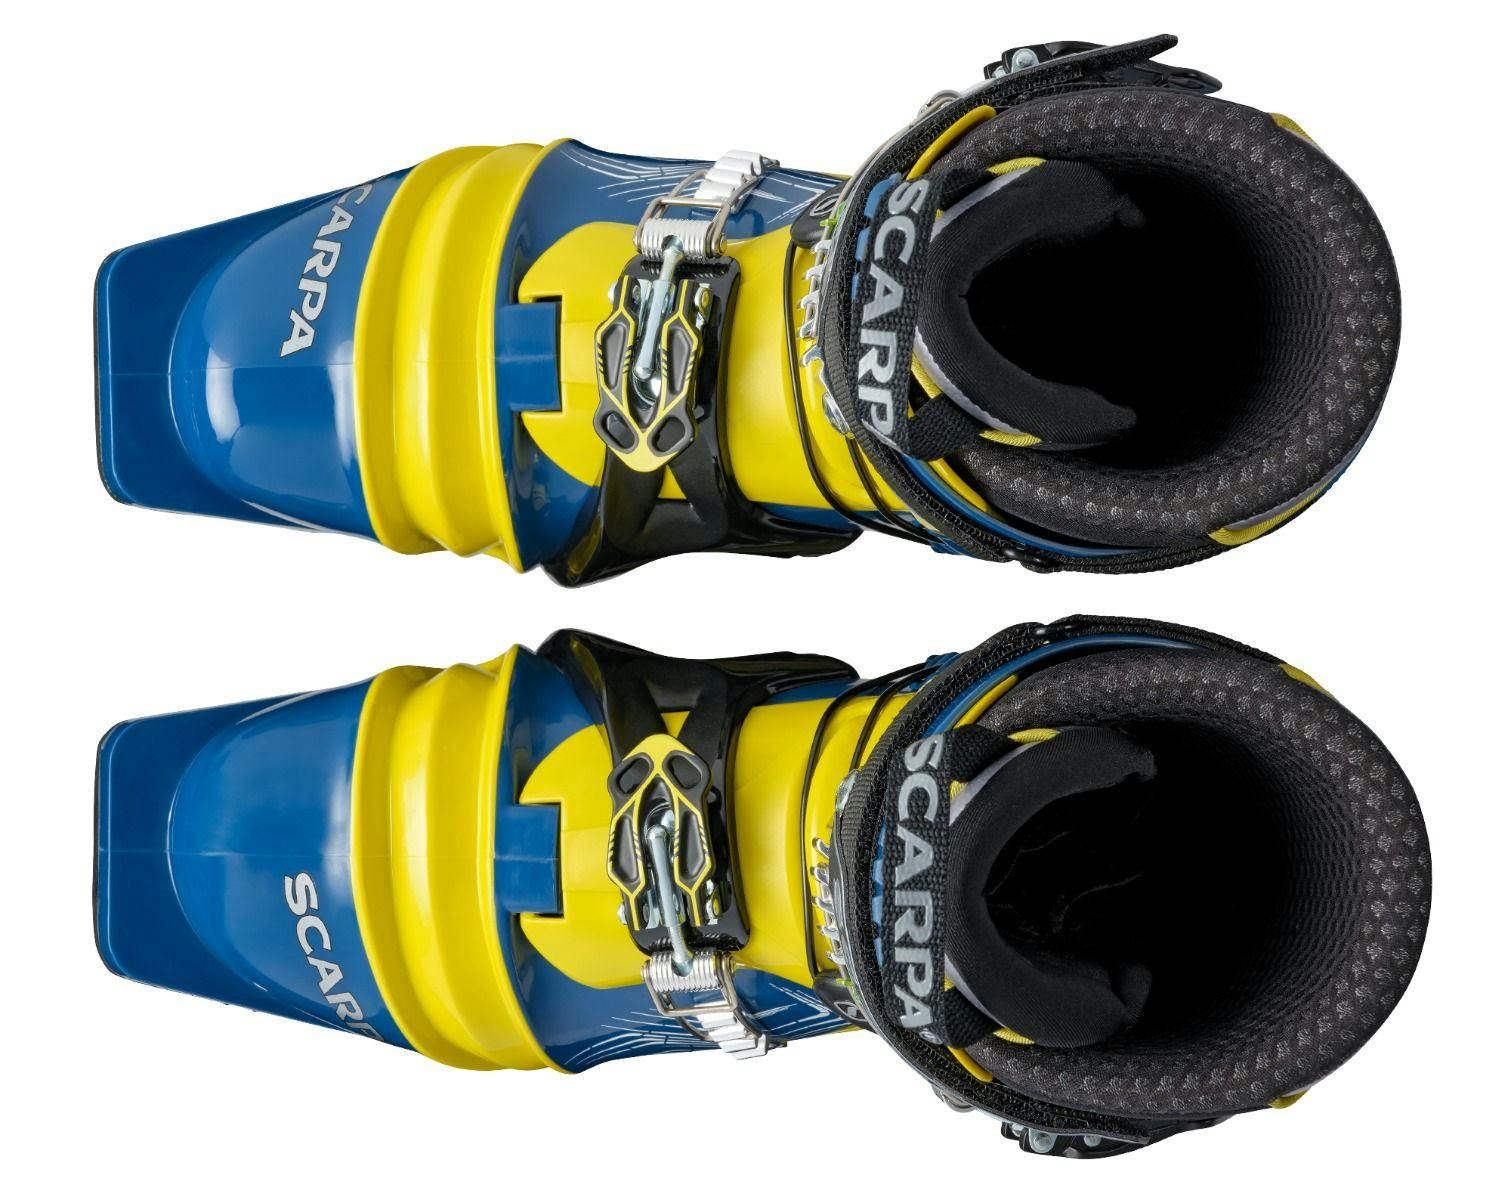 Scarpa T2 ECO Telemark Ski Boots · 2022